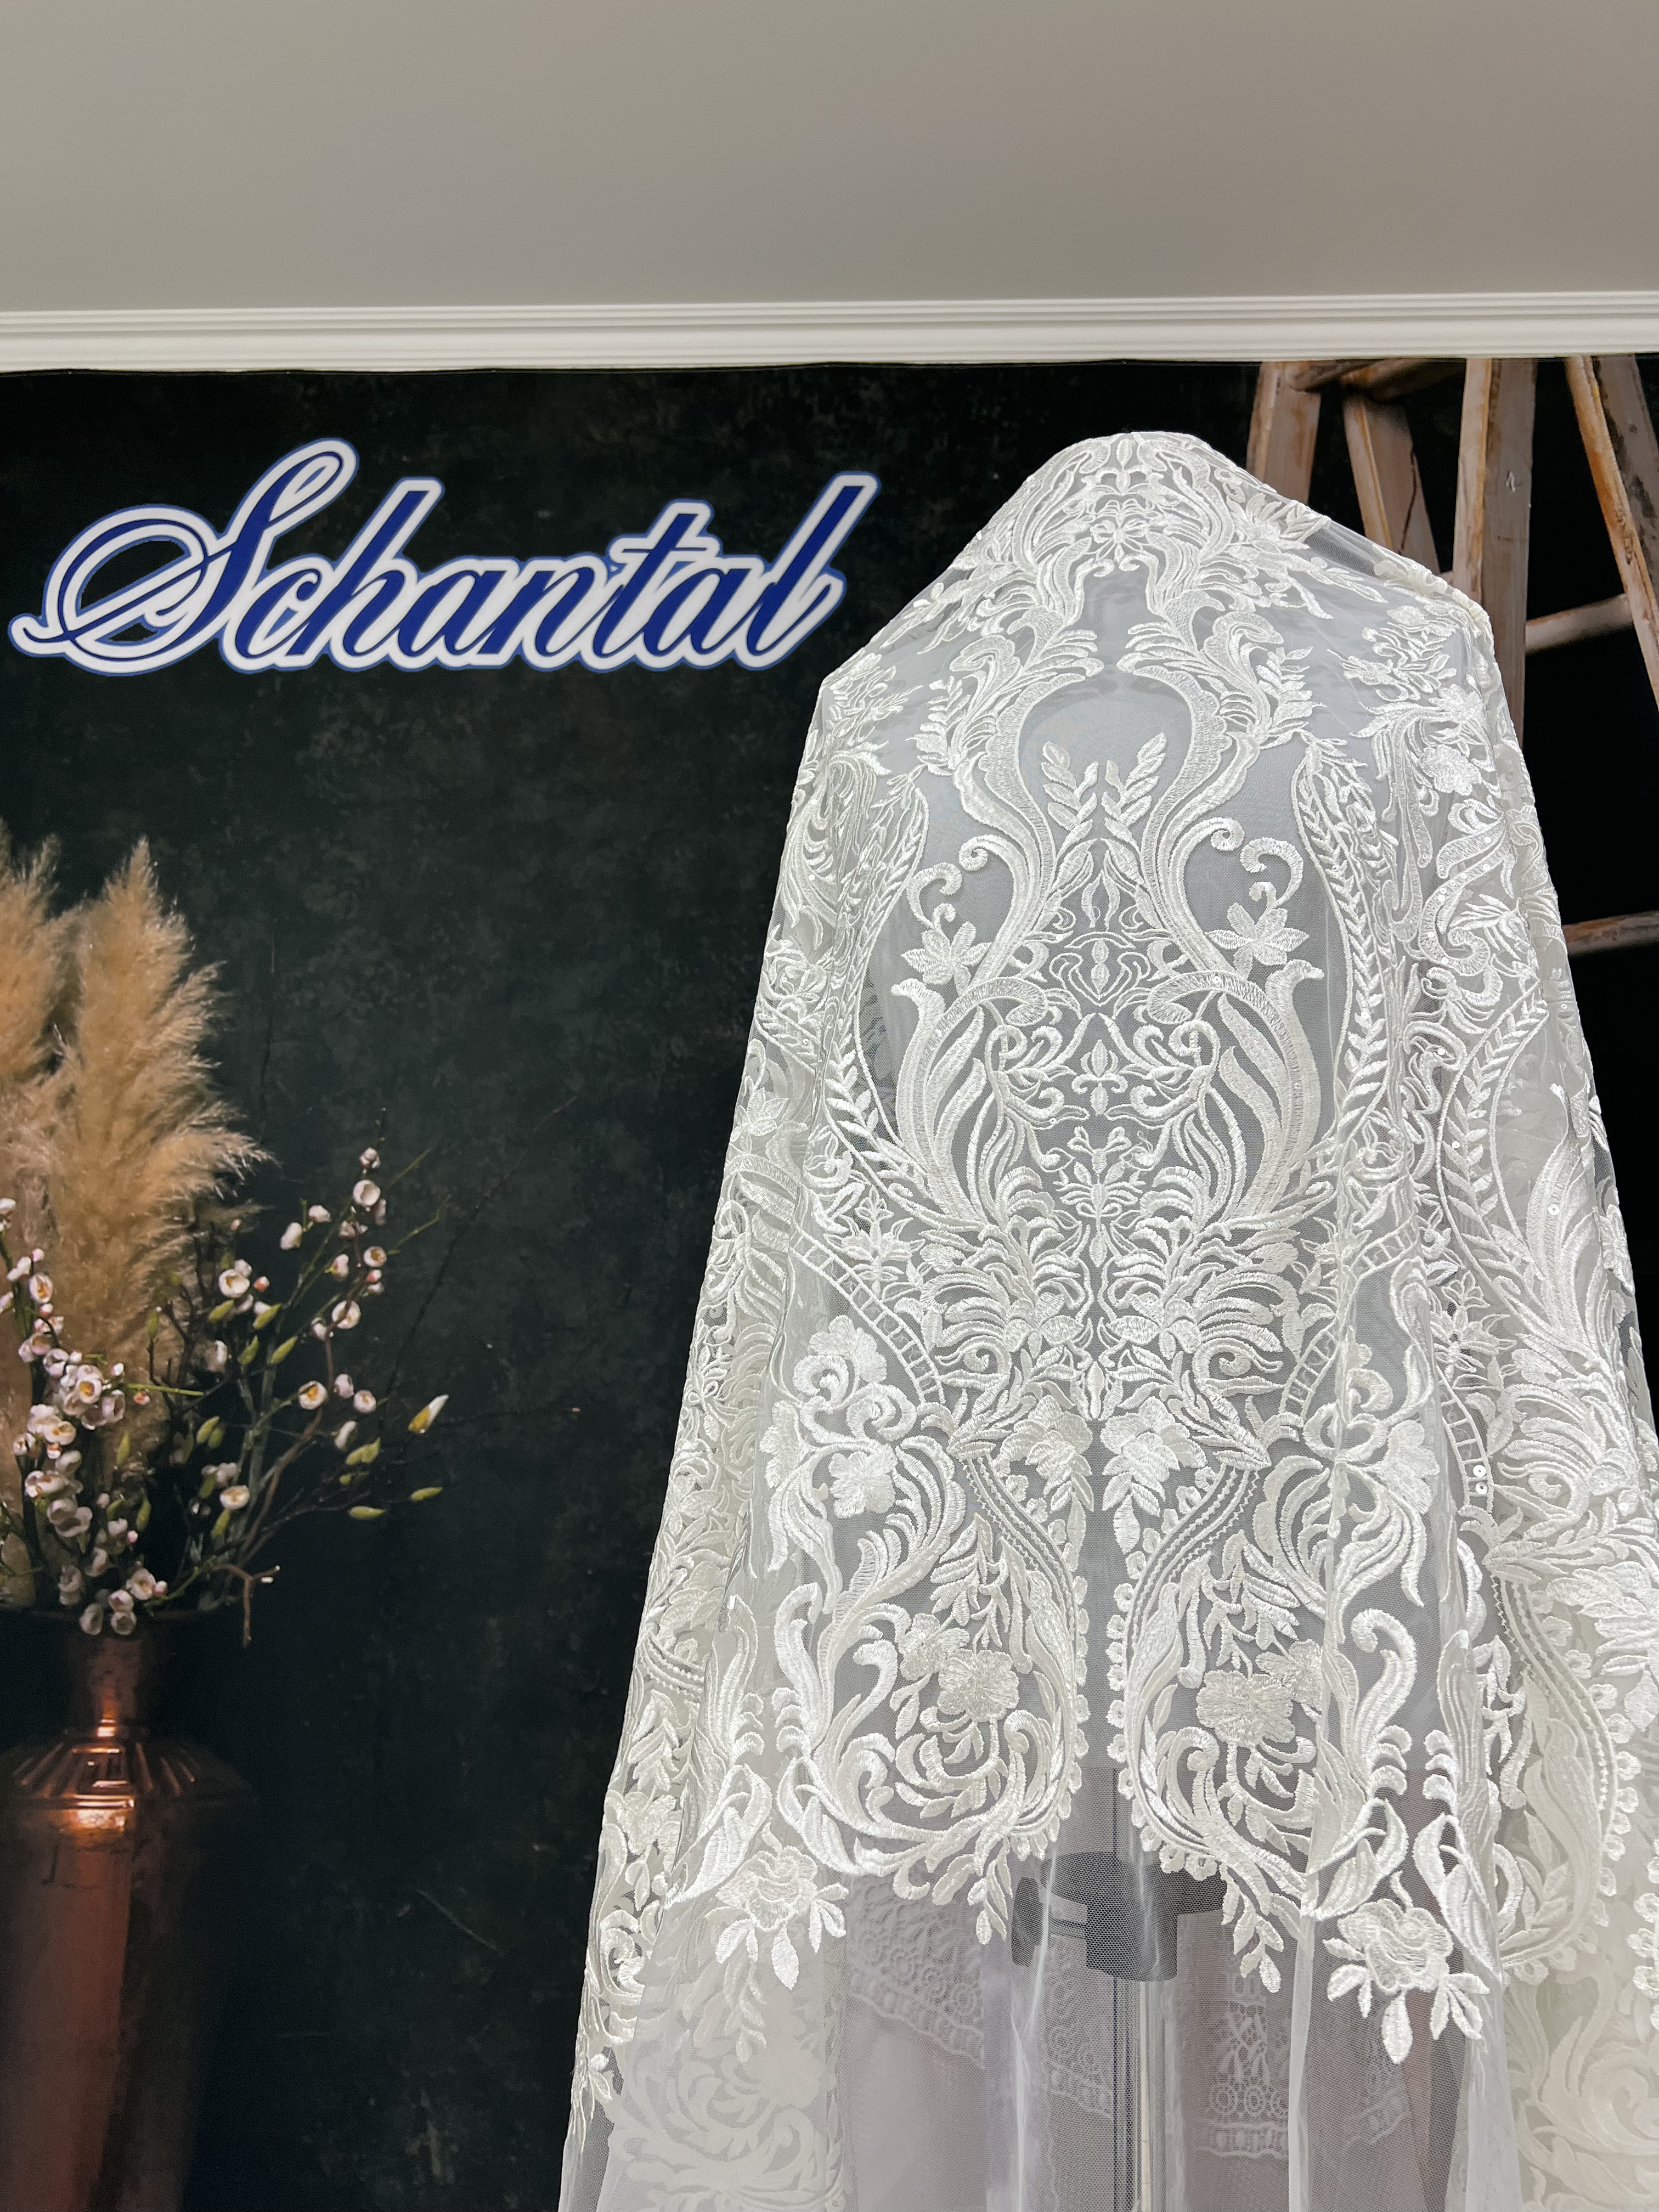 Schantal Brautkleid aus der Kollektion „Schatz“, Modell K - 1 iv. Foto 8